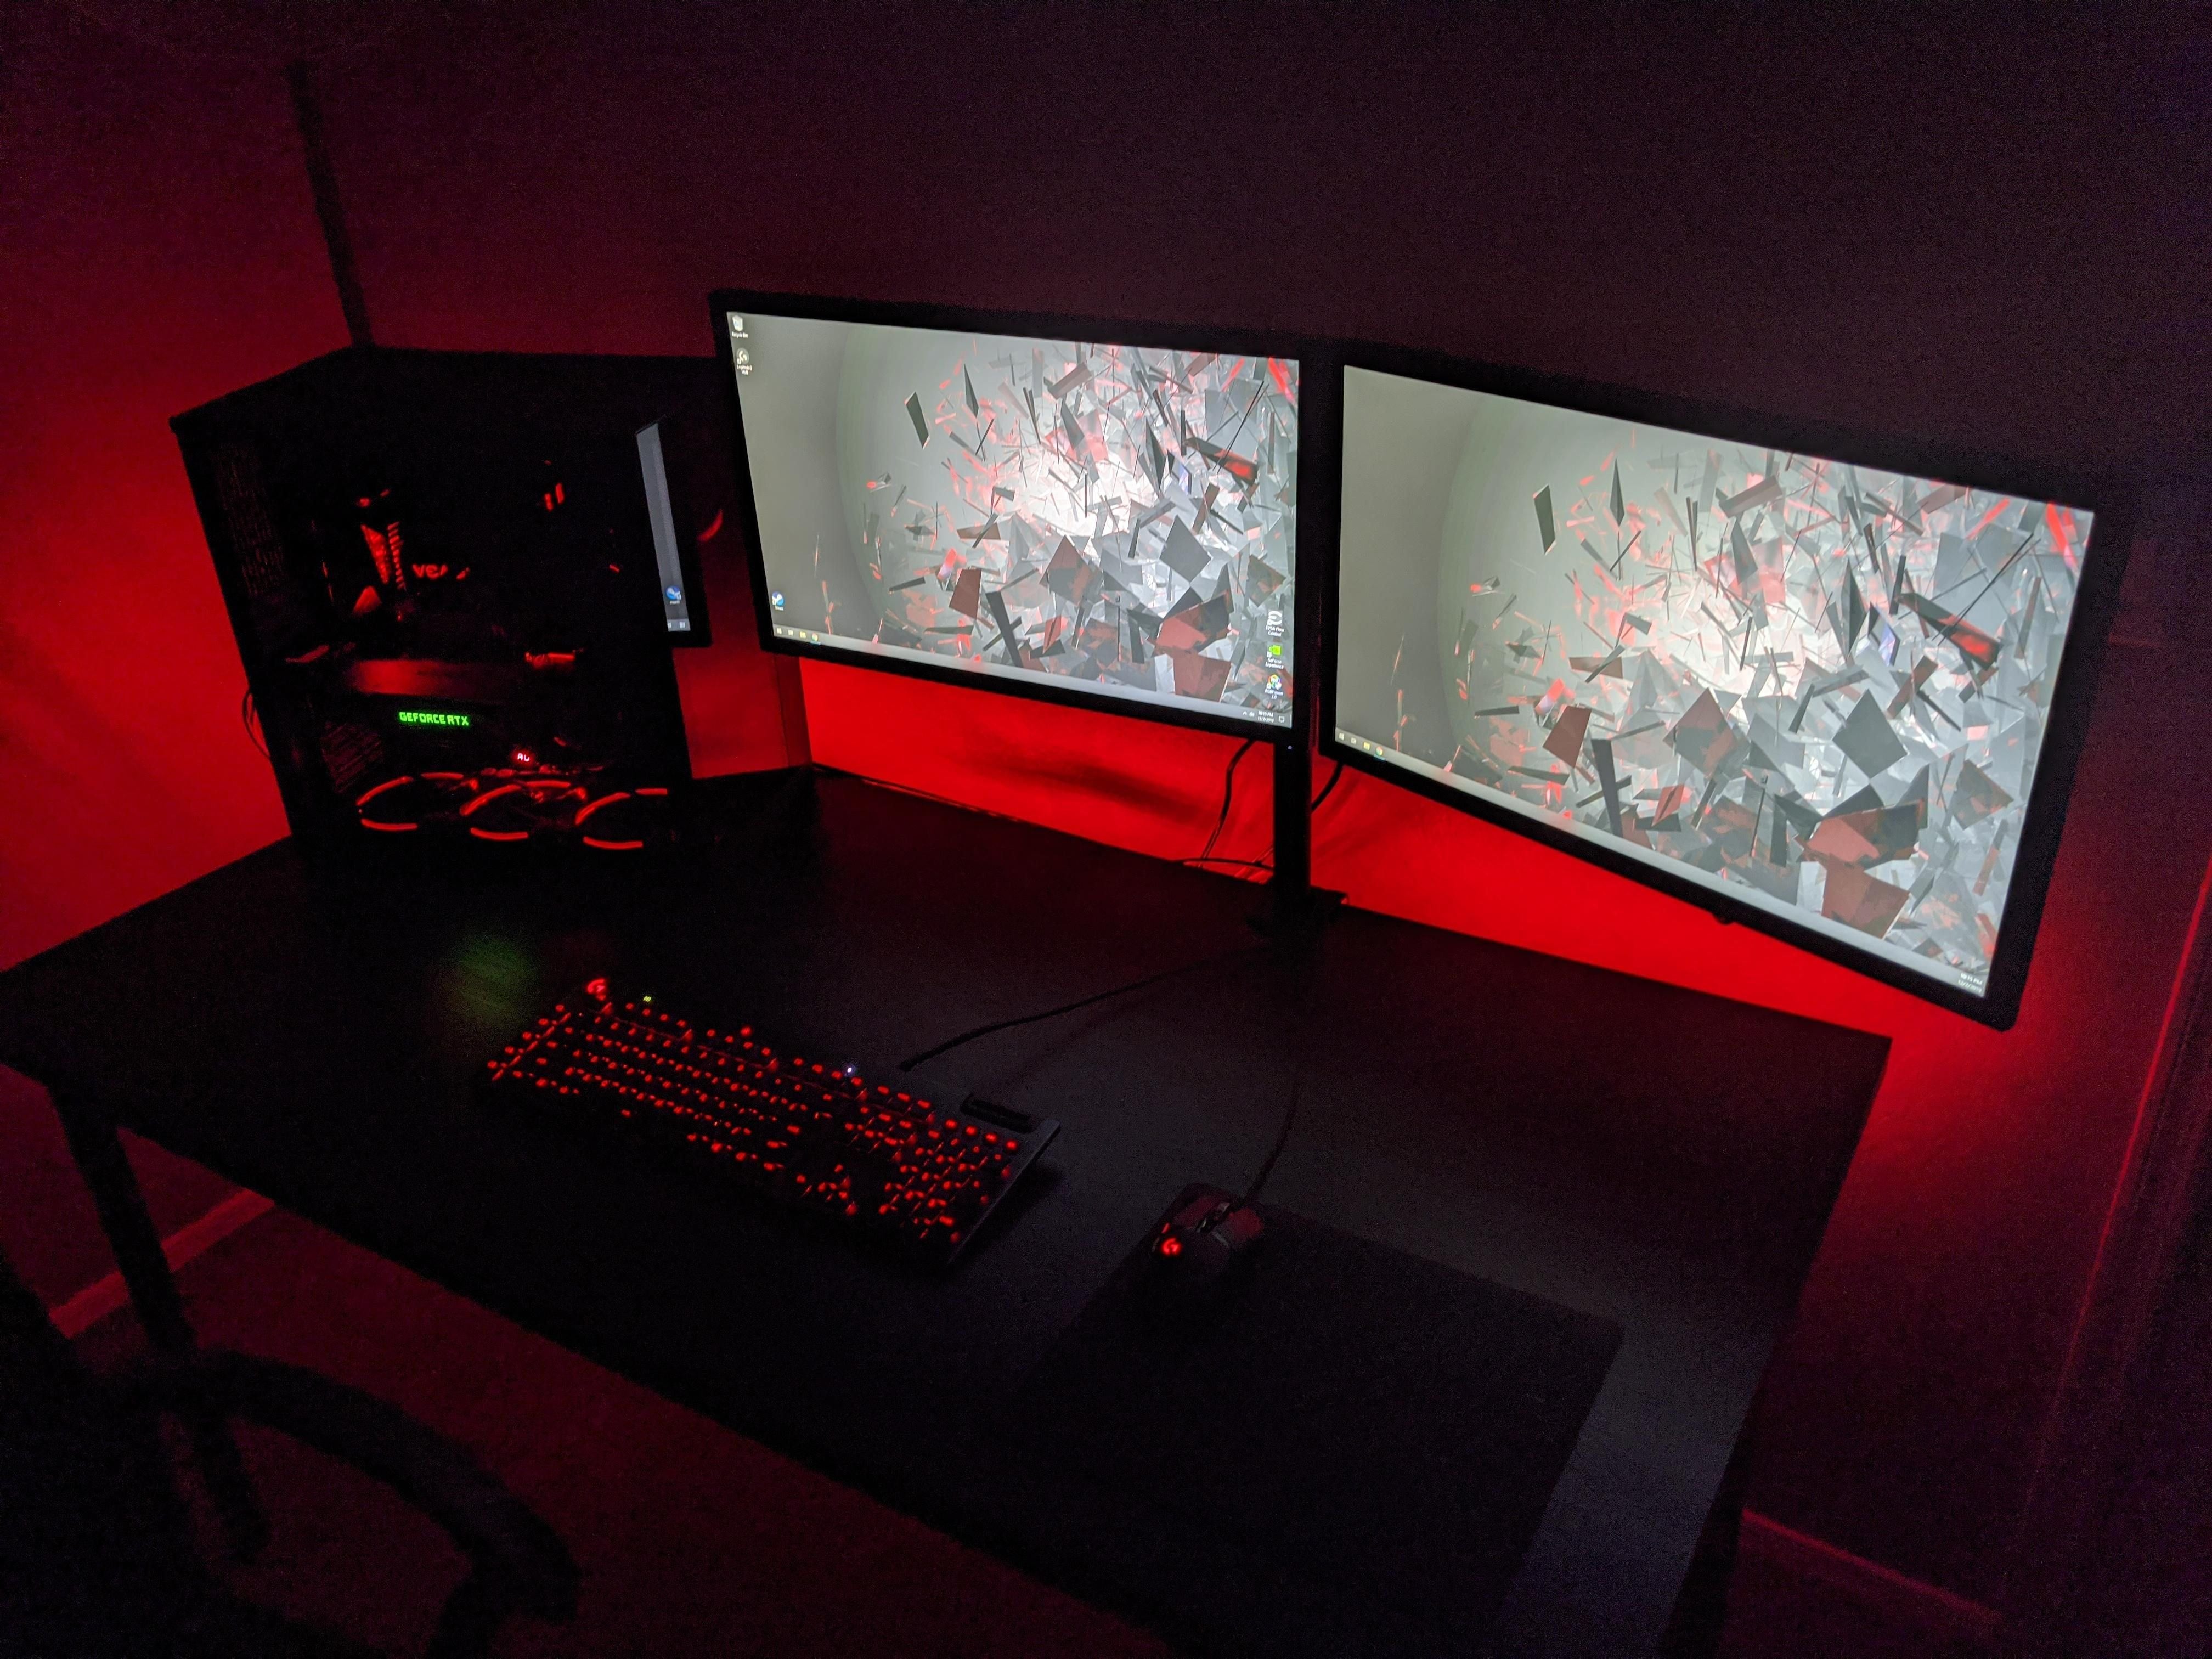 Modern gaming 1. Геймерские комнаты с подсветкой. Игровое место геймера. Геймерская комната с подсветкой красная. Компьютерный стол игровой с подсветкой.